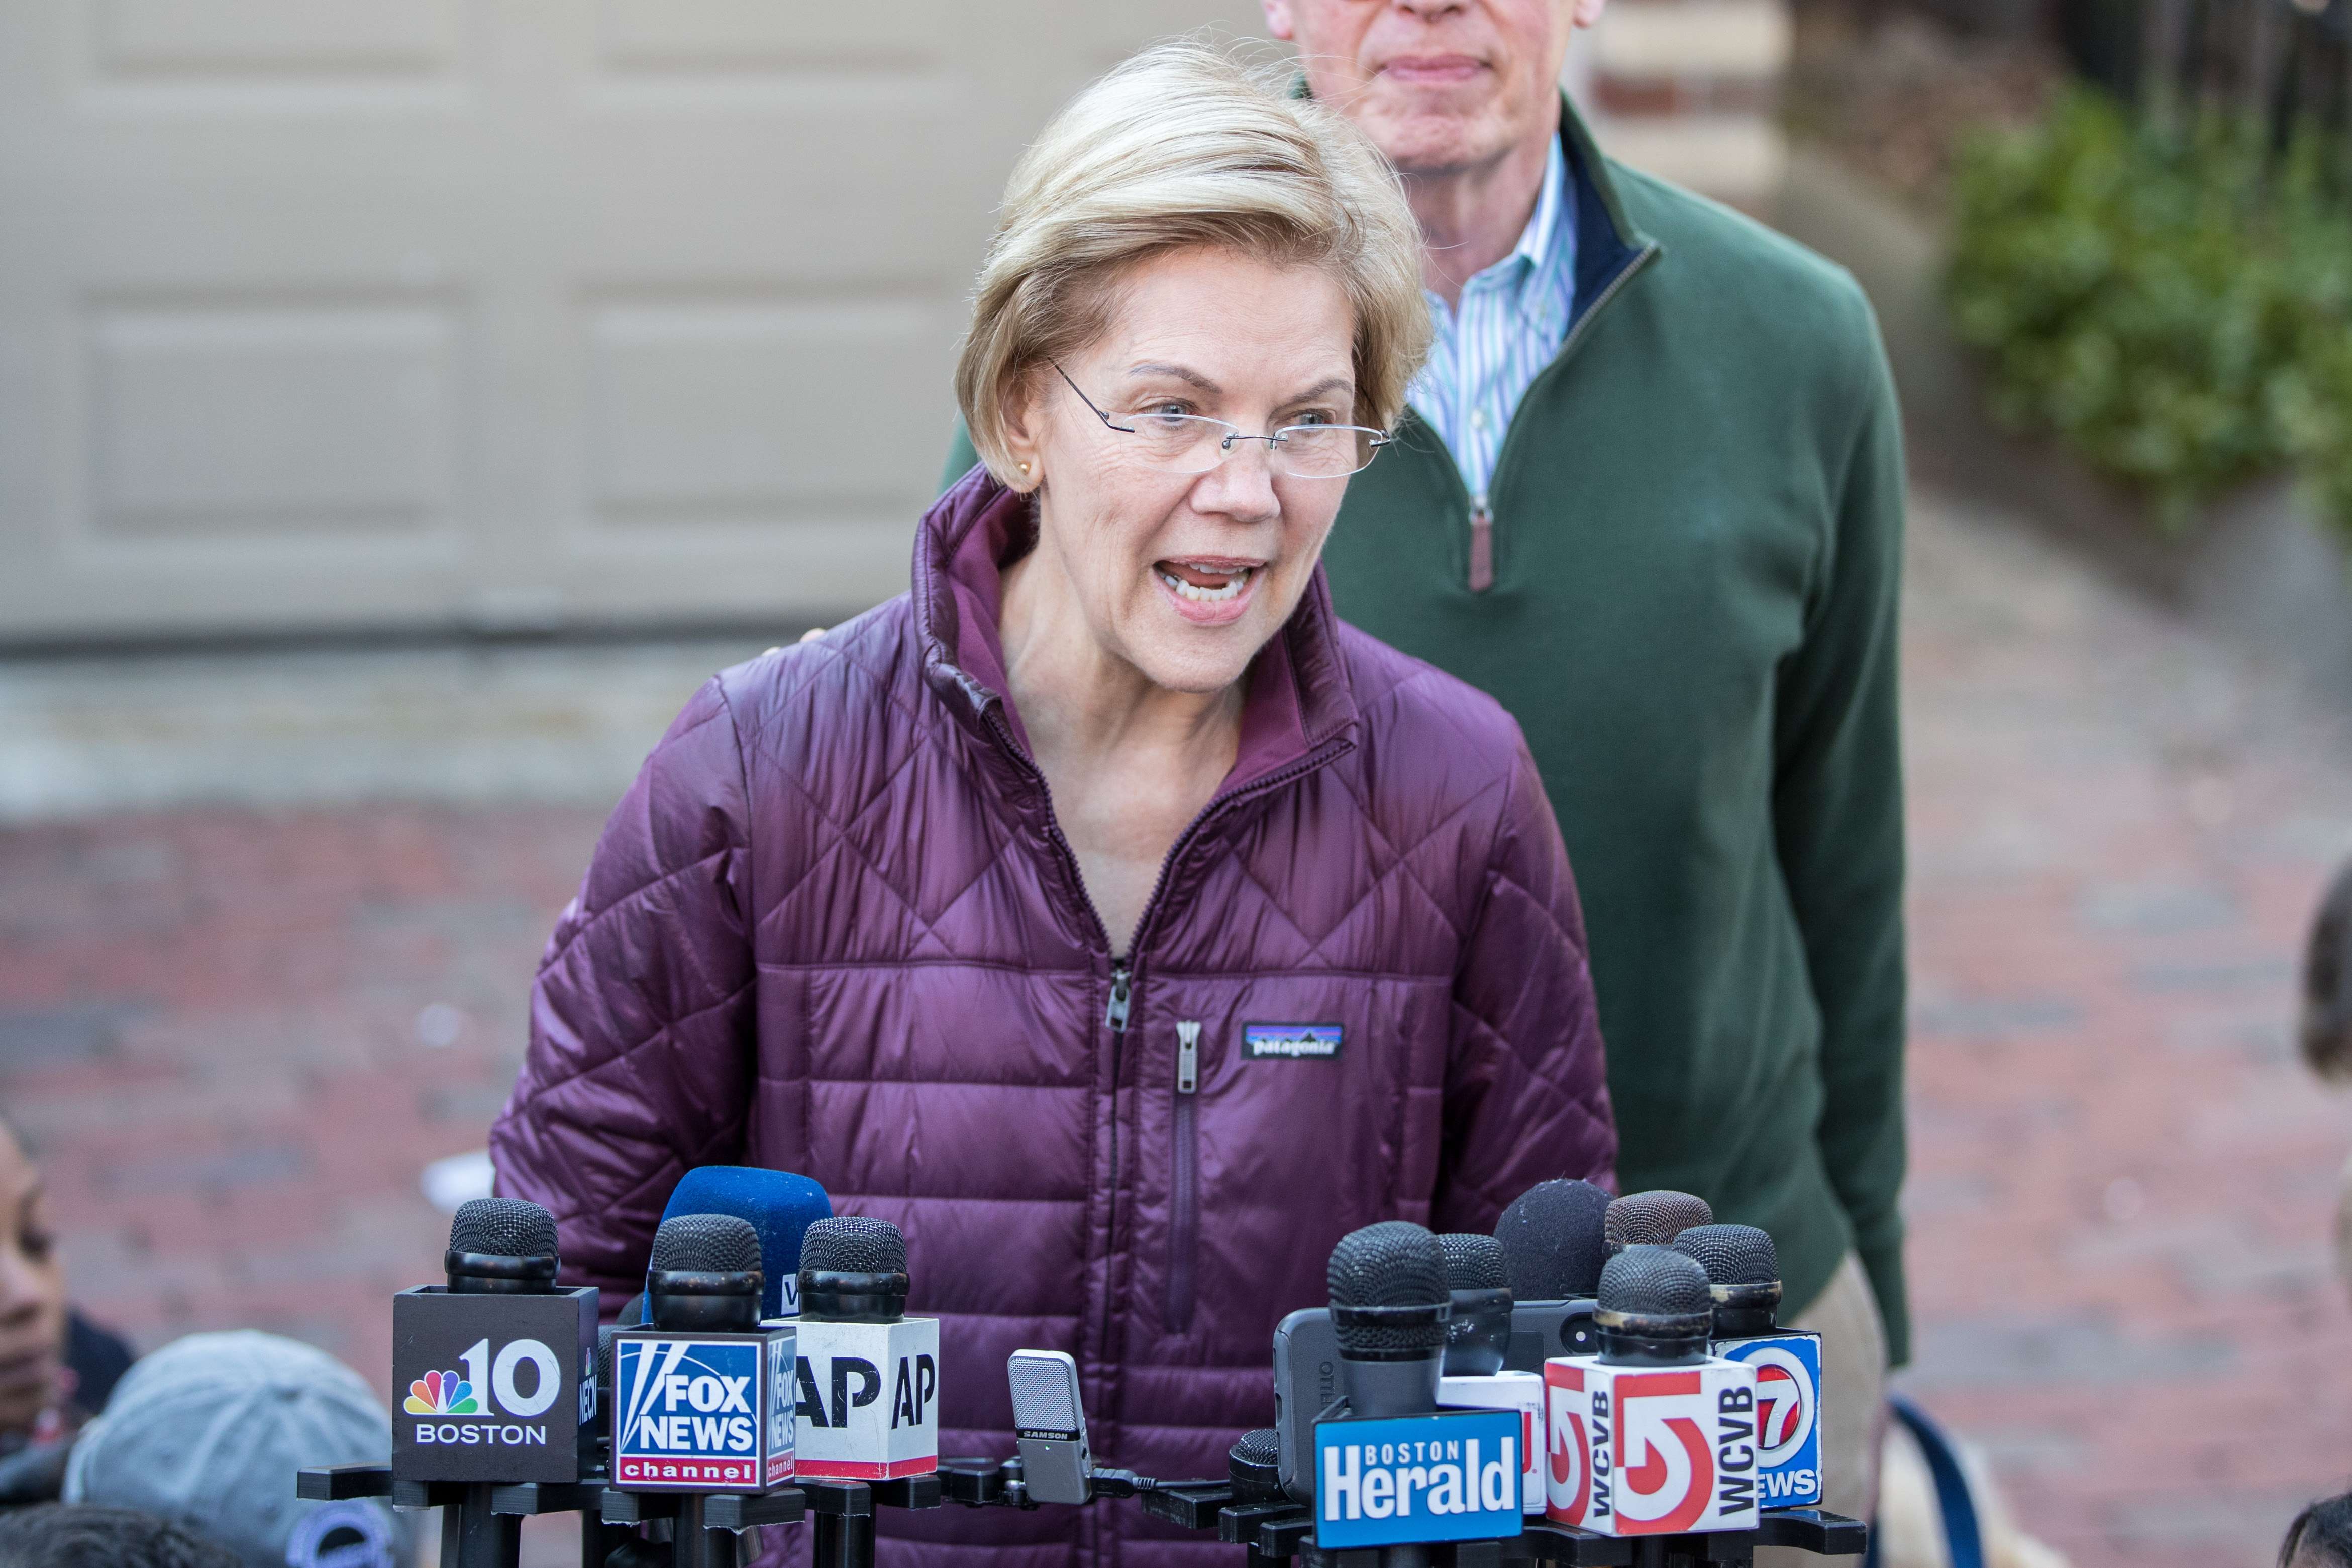 La senadora Elizabeth Warren mostró su preocupación por el incidente y pidió una investigación independiente. (Foto Prensa Libre: AFP)